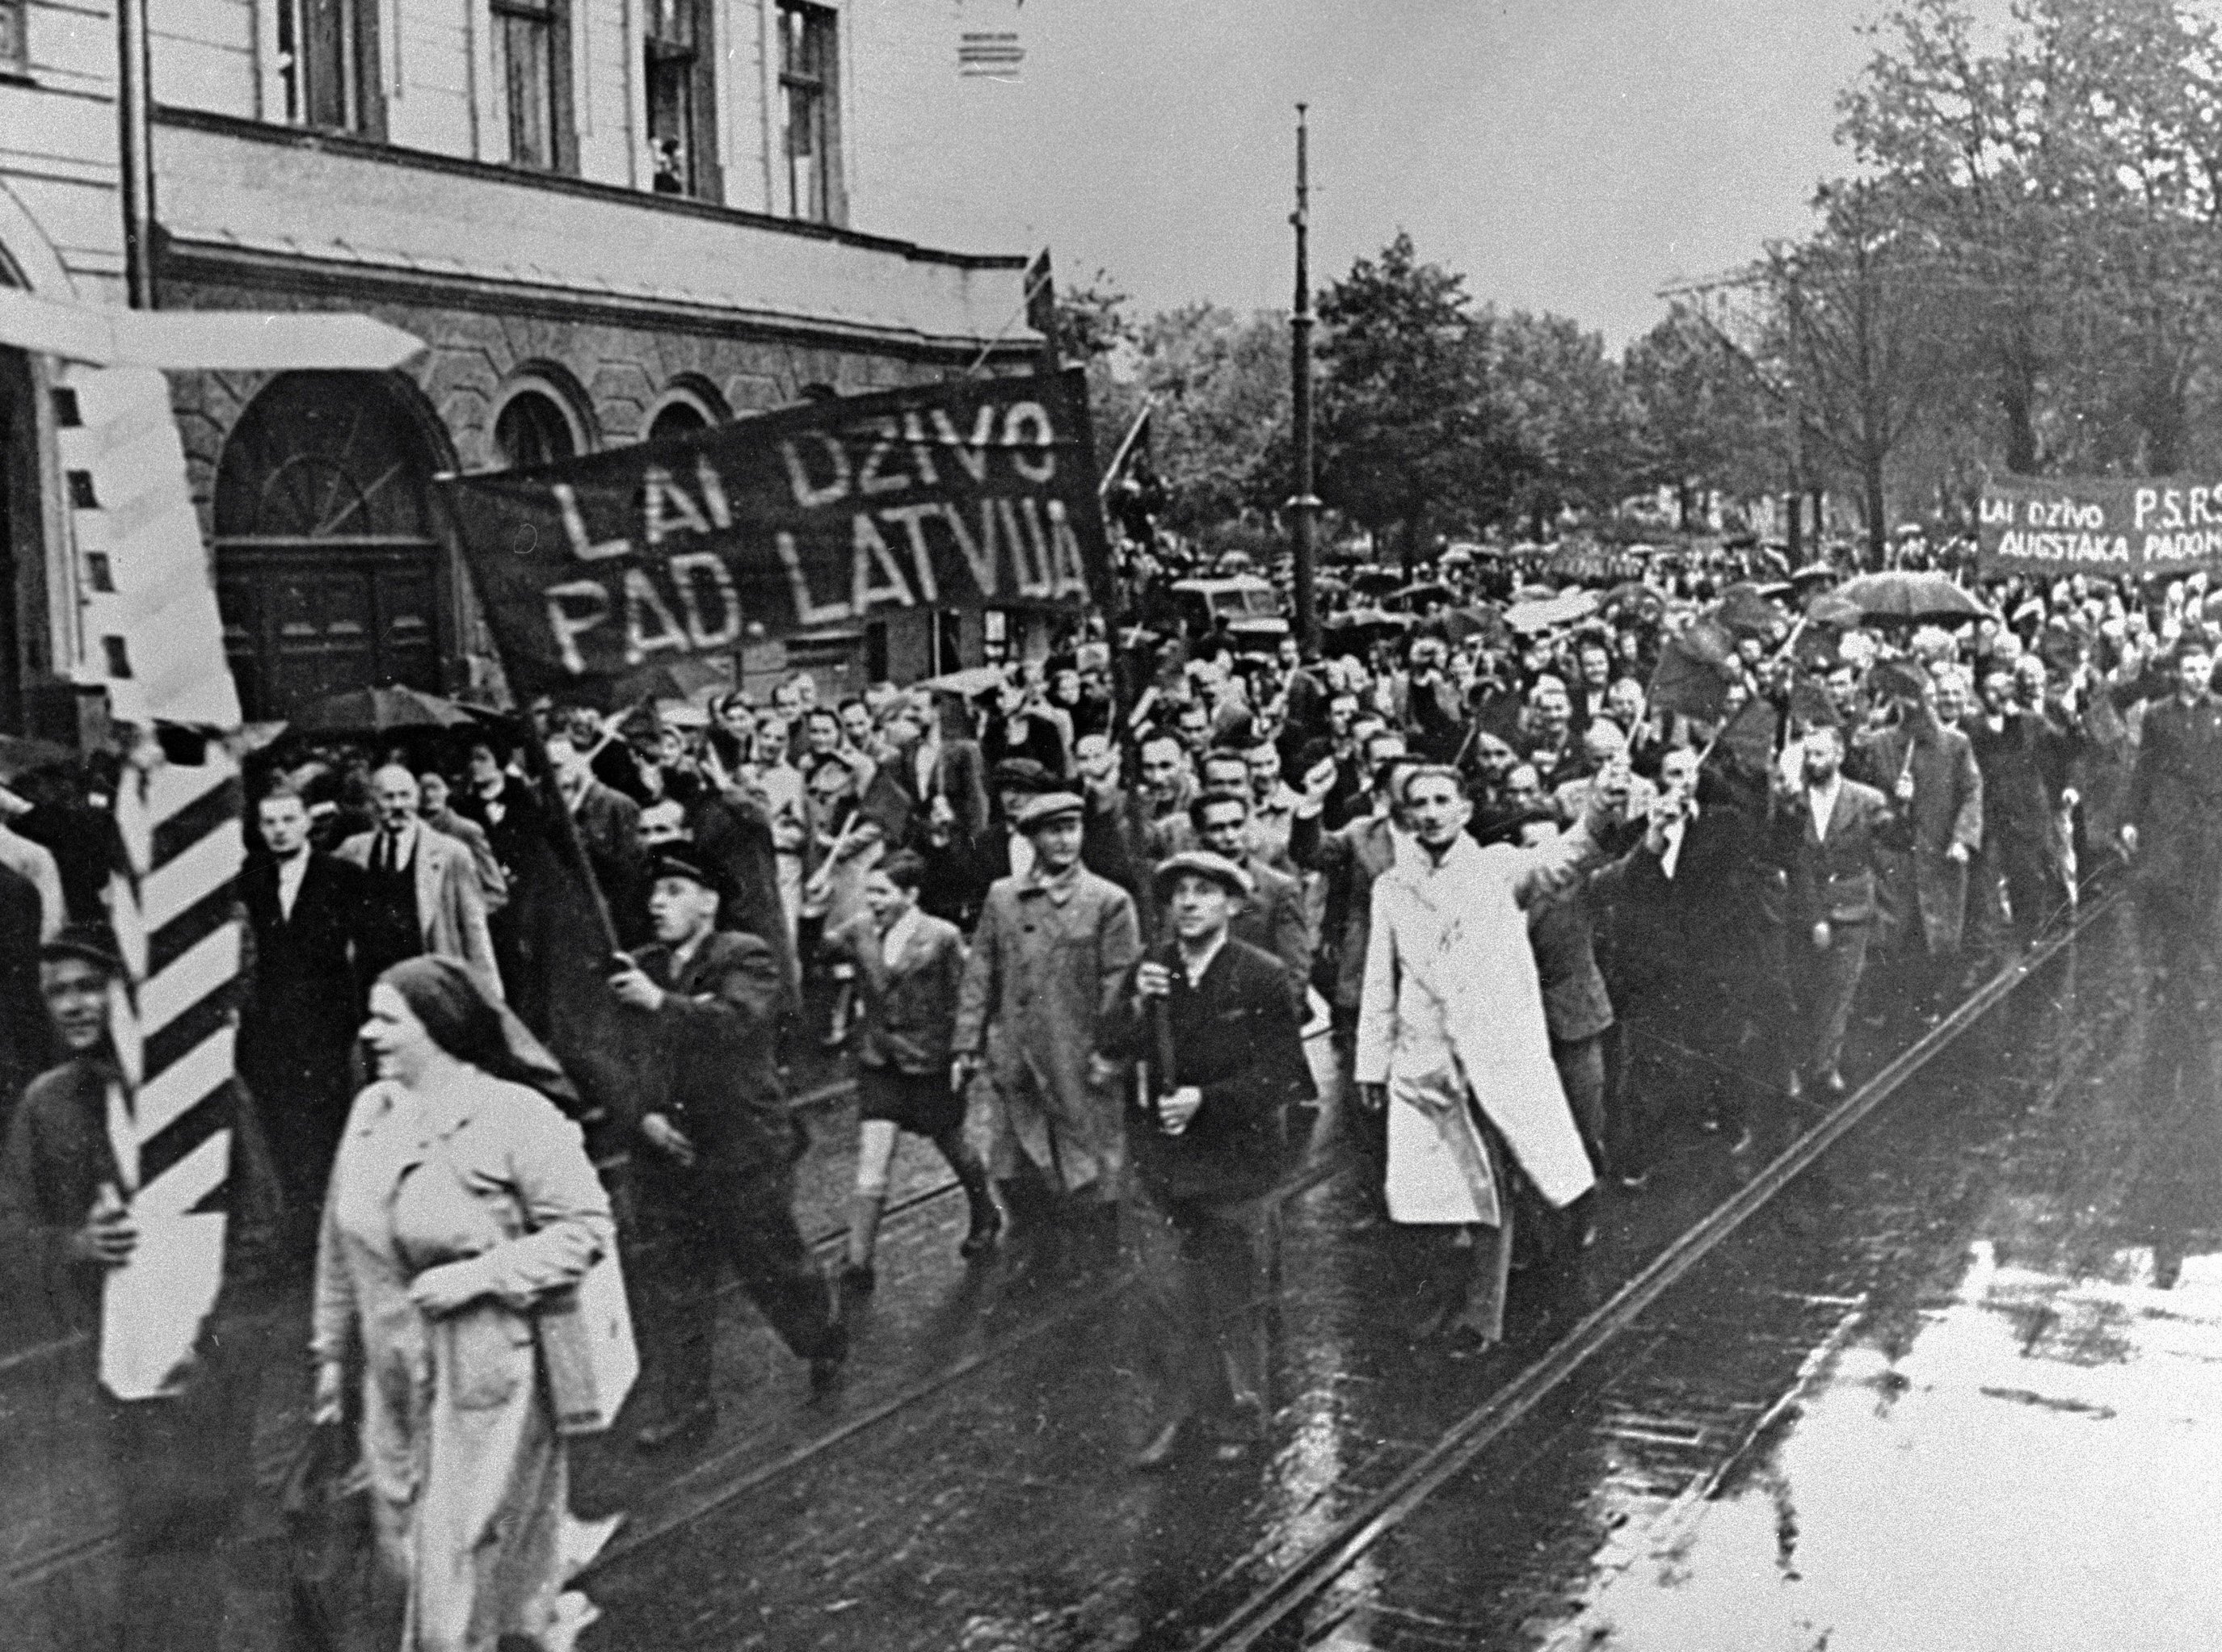 Демонстранты, идущие по улицам Риги, несут транспаранты с надписью "Да здравствует Советская Латвия", 1940 год